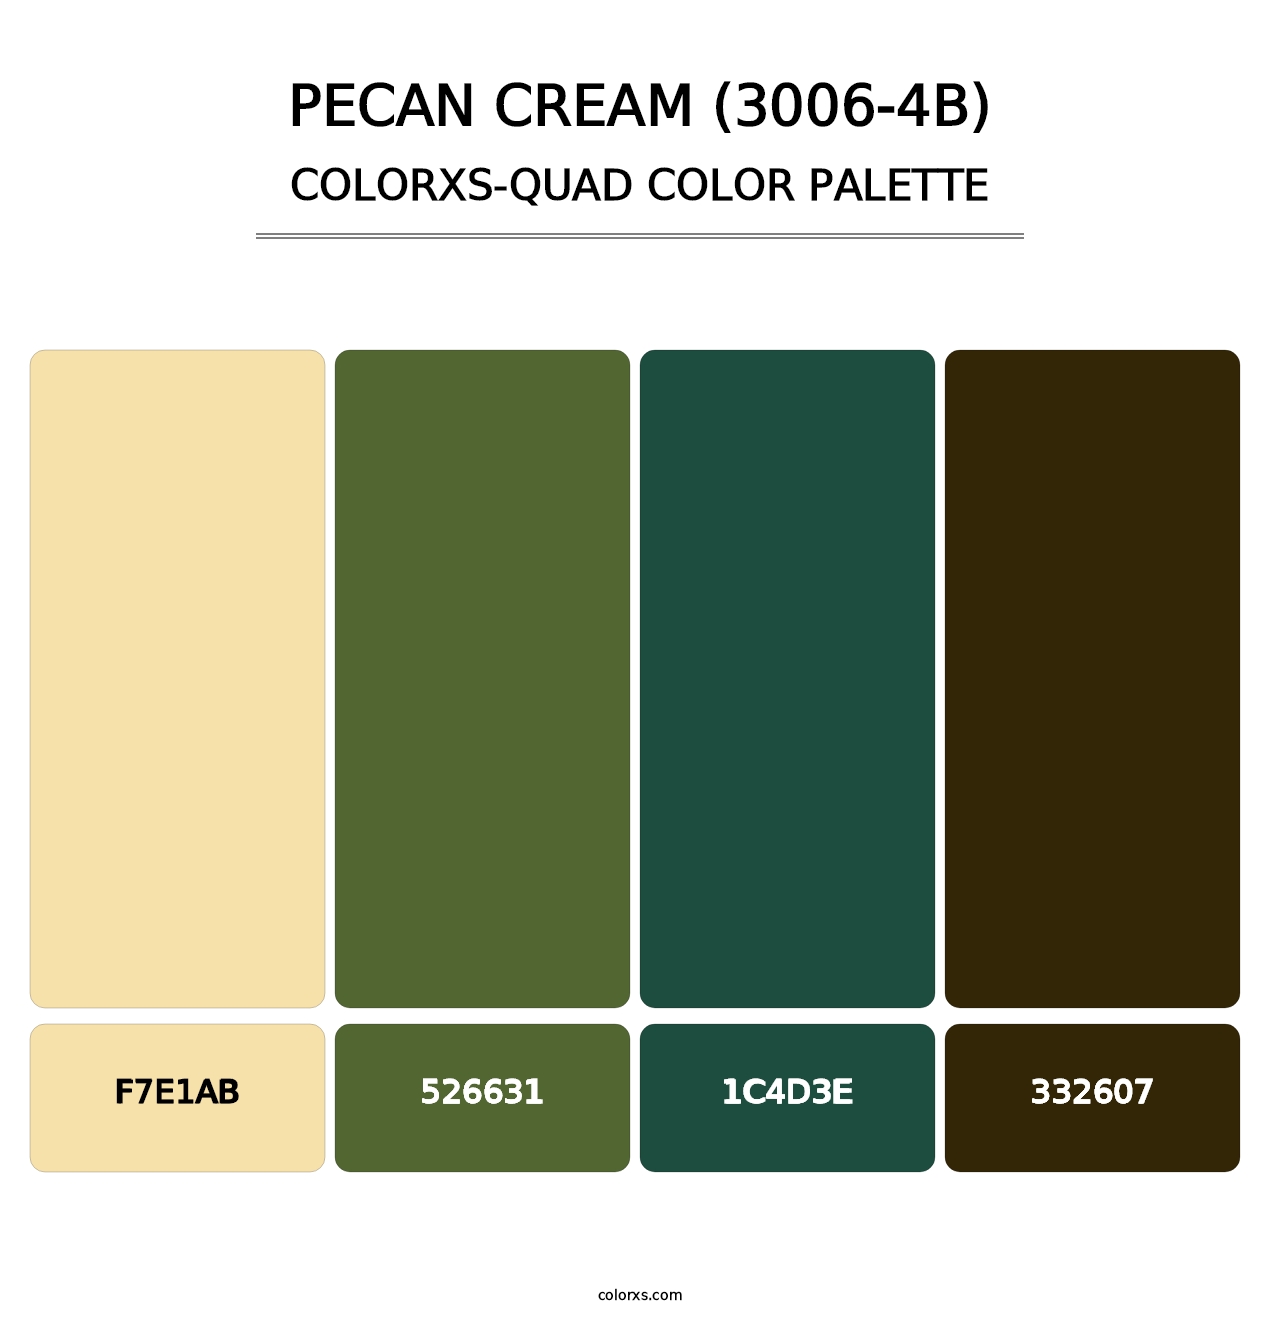 Pecan Cream (3006-4B) - Colorxs Quad Palette